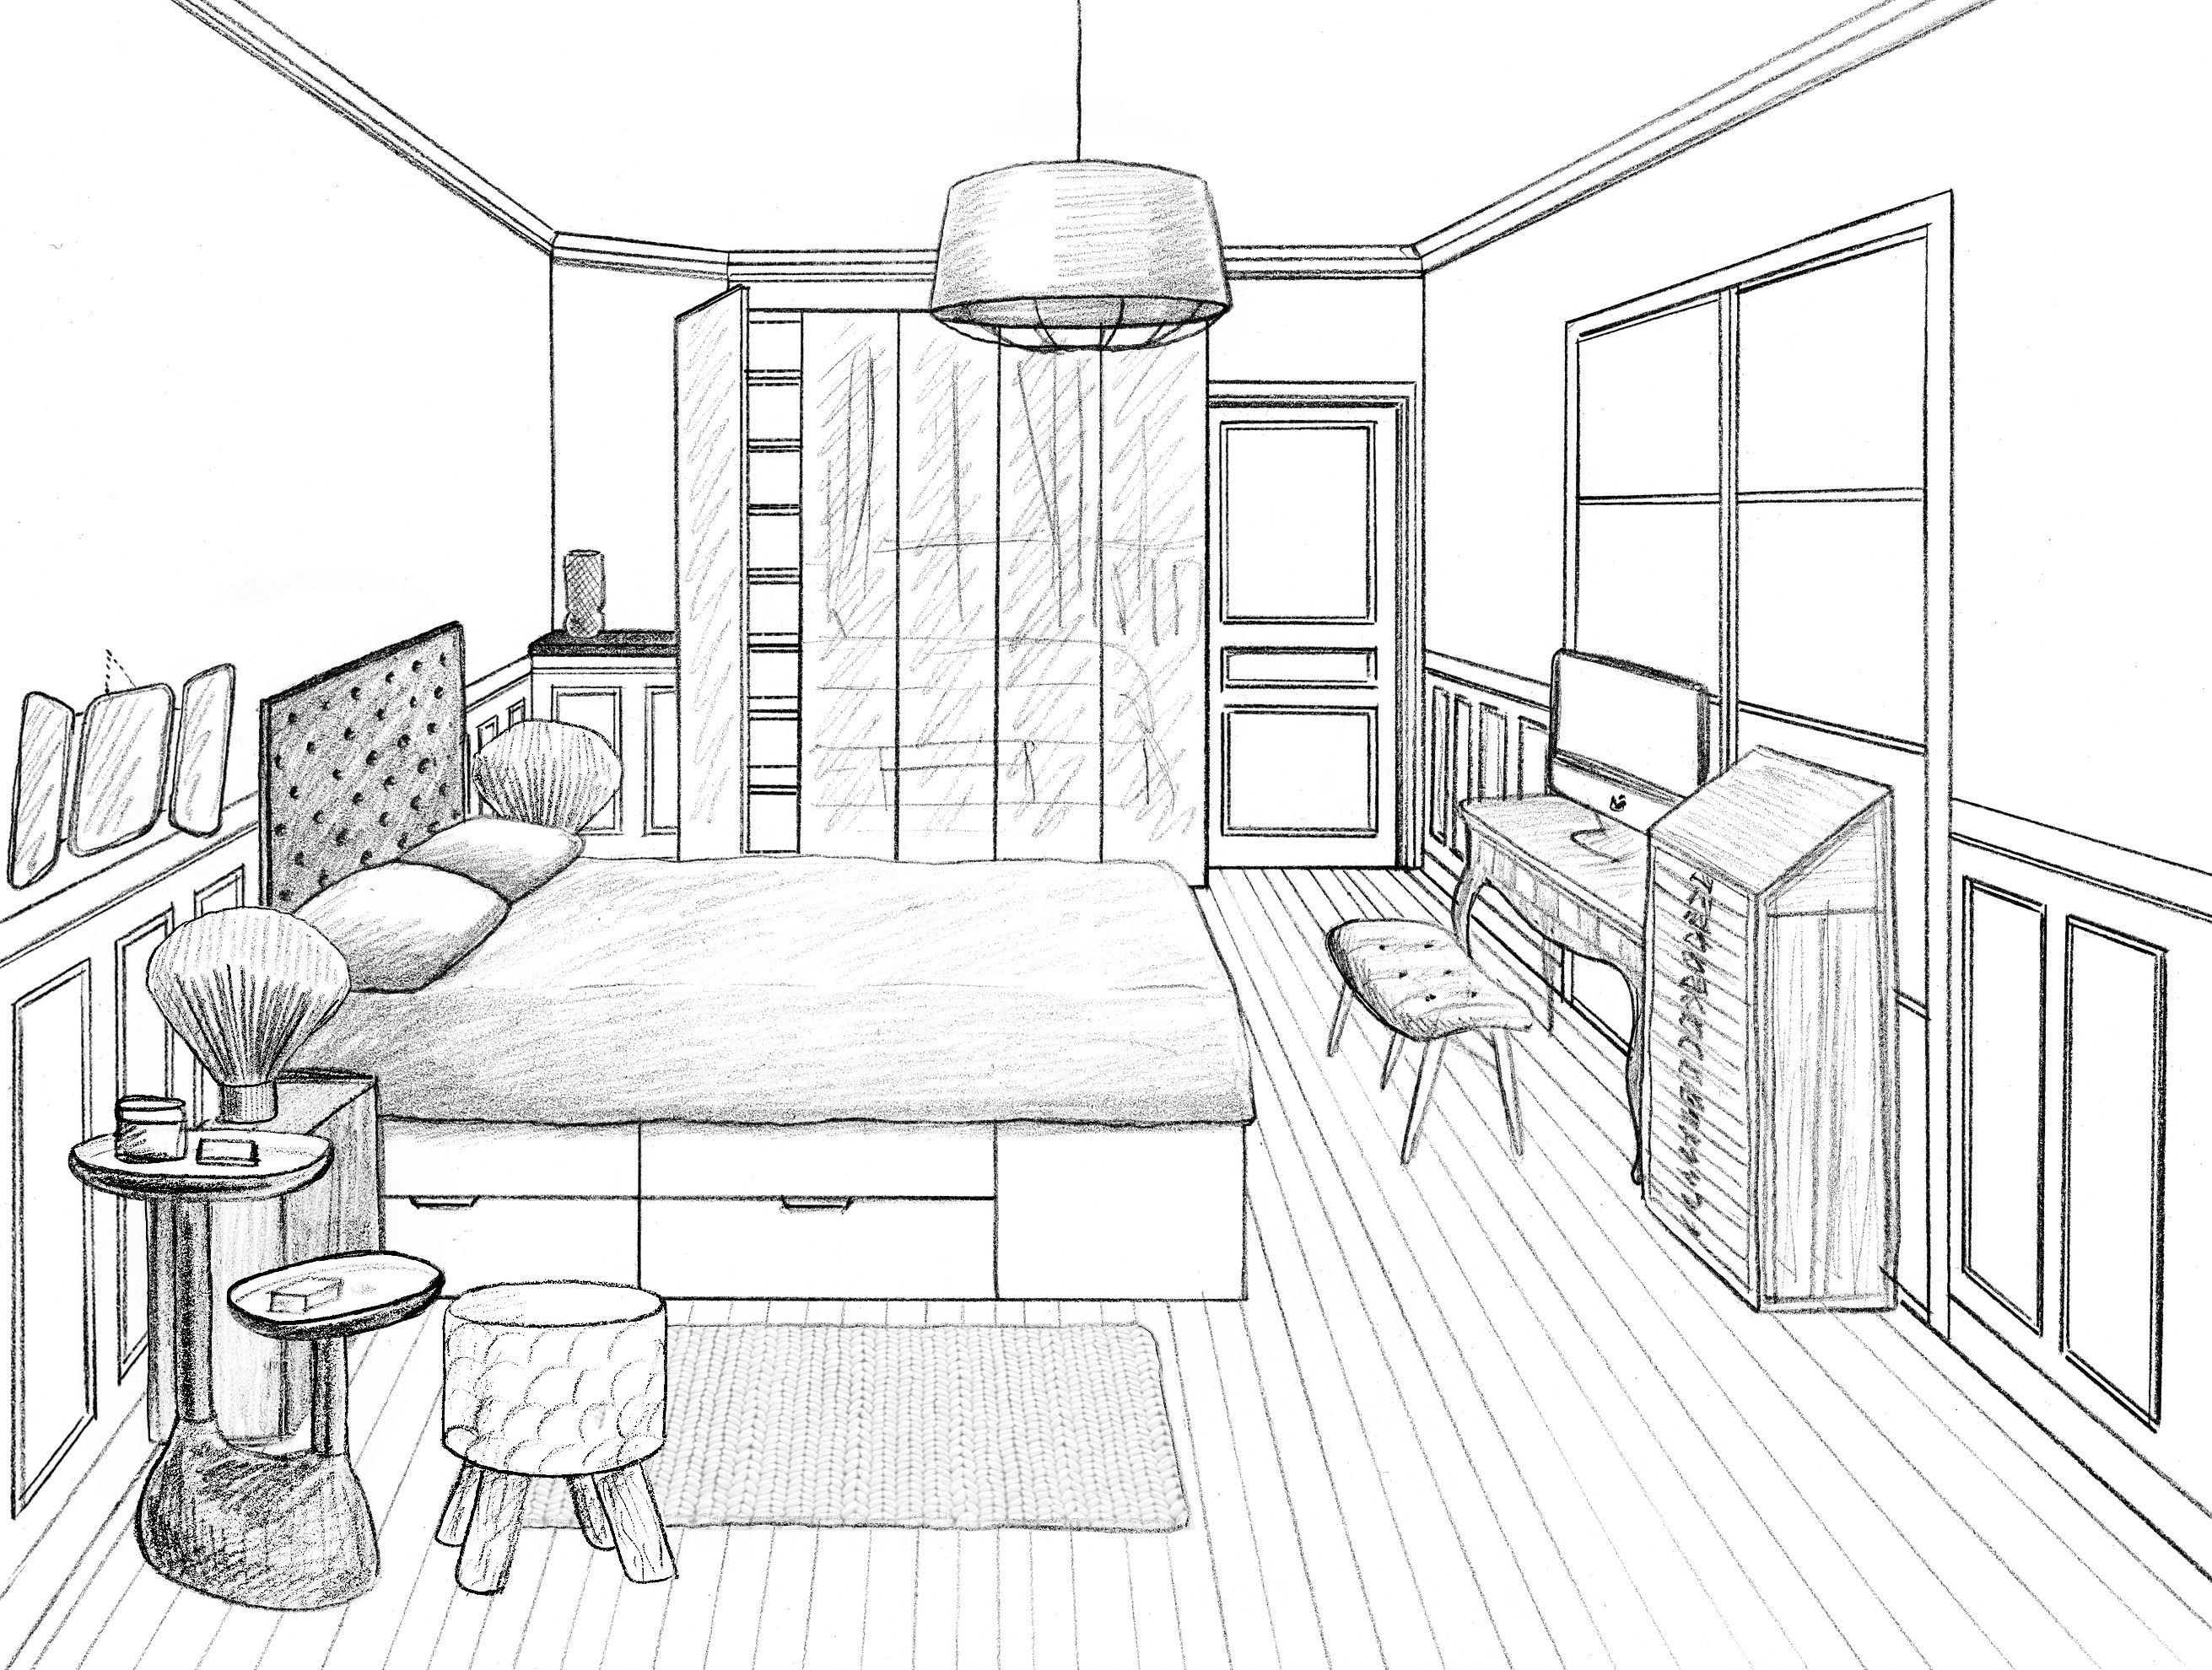 Рисунки детской комнаты карандашом с мебелью и текстилем